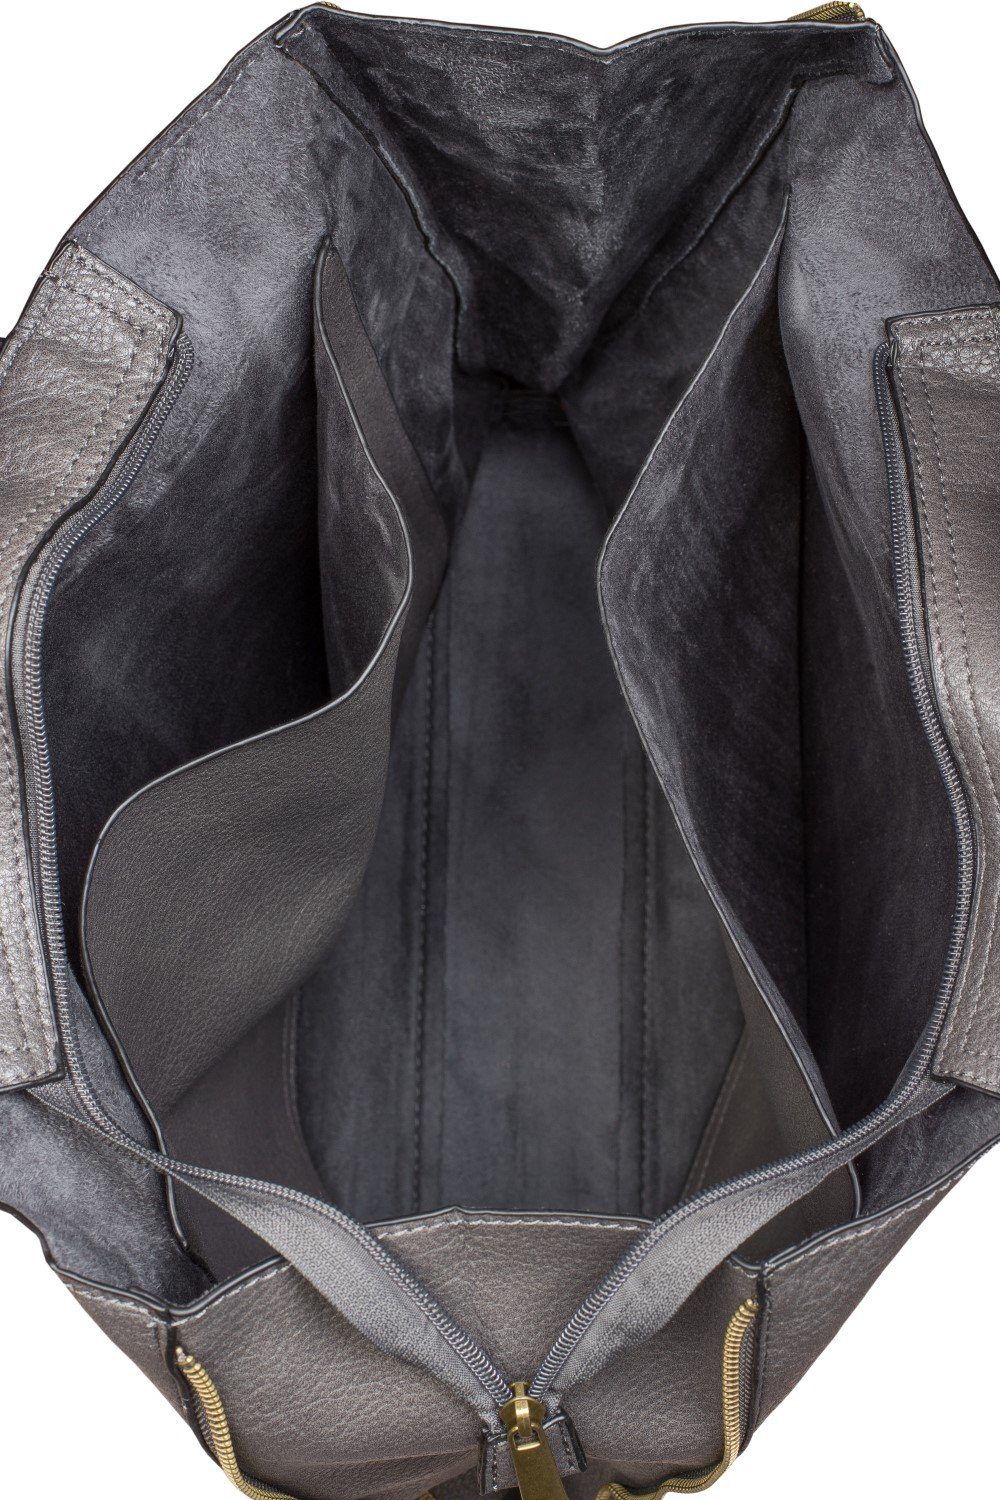 Damen Handtaschen styleBREAKER Schultertasche, Tote Bag mit seitlichen Reißverschlüssen